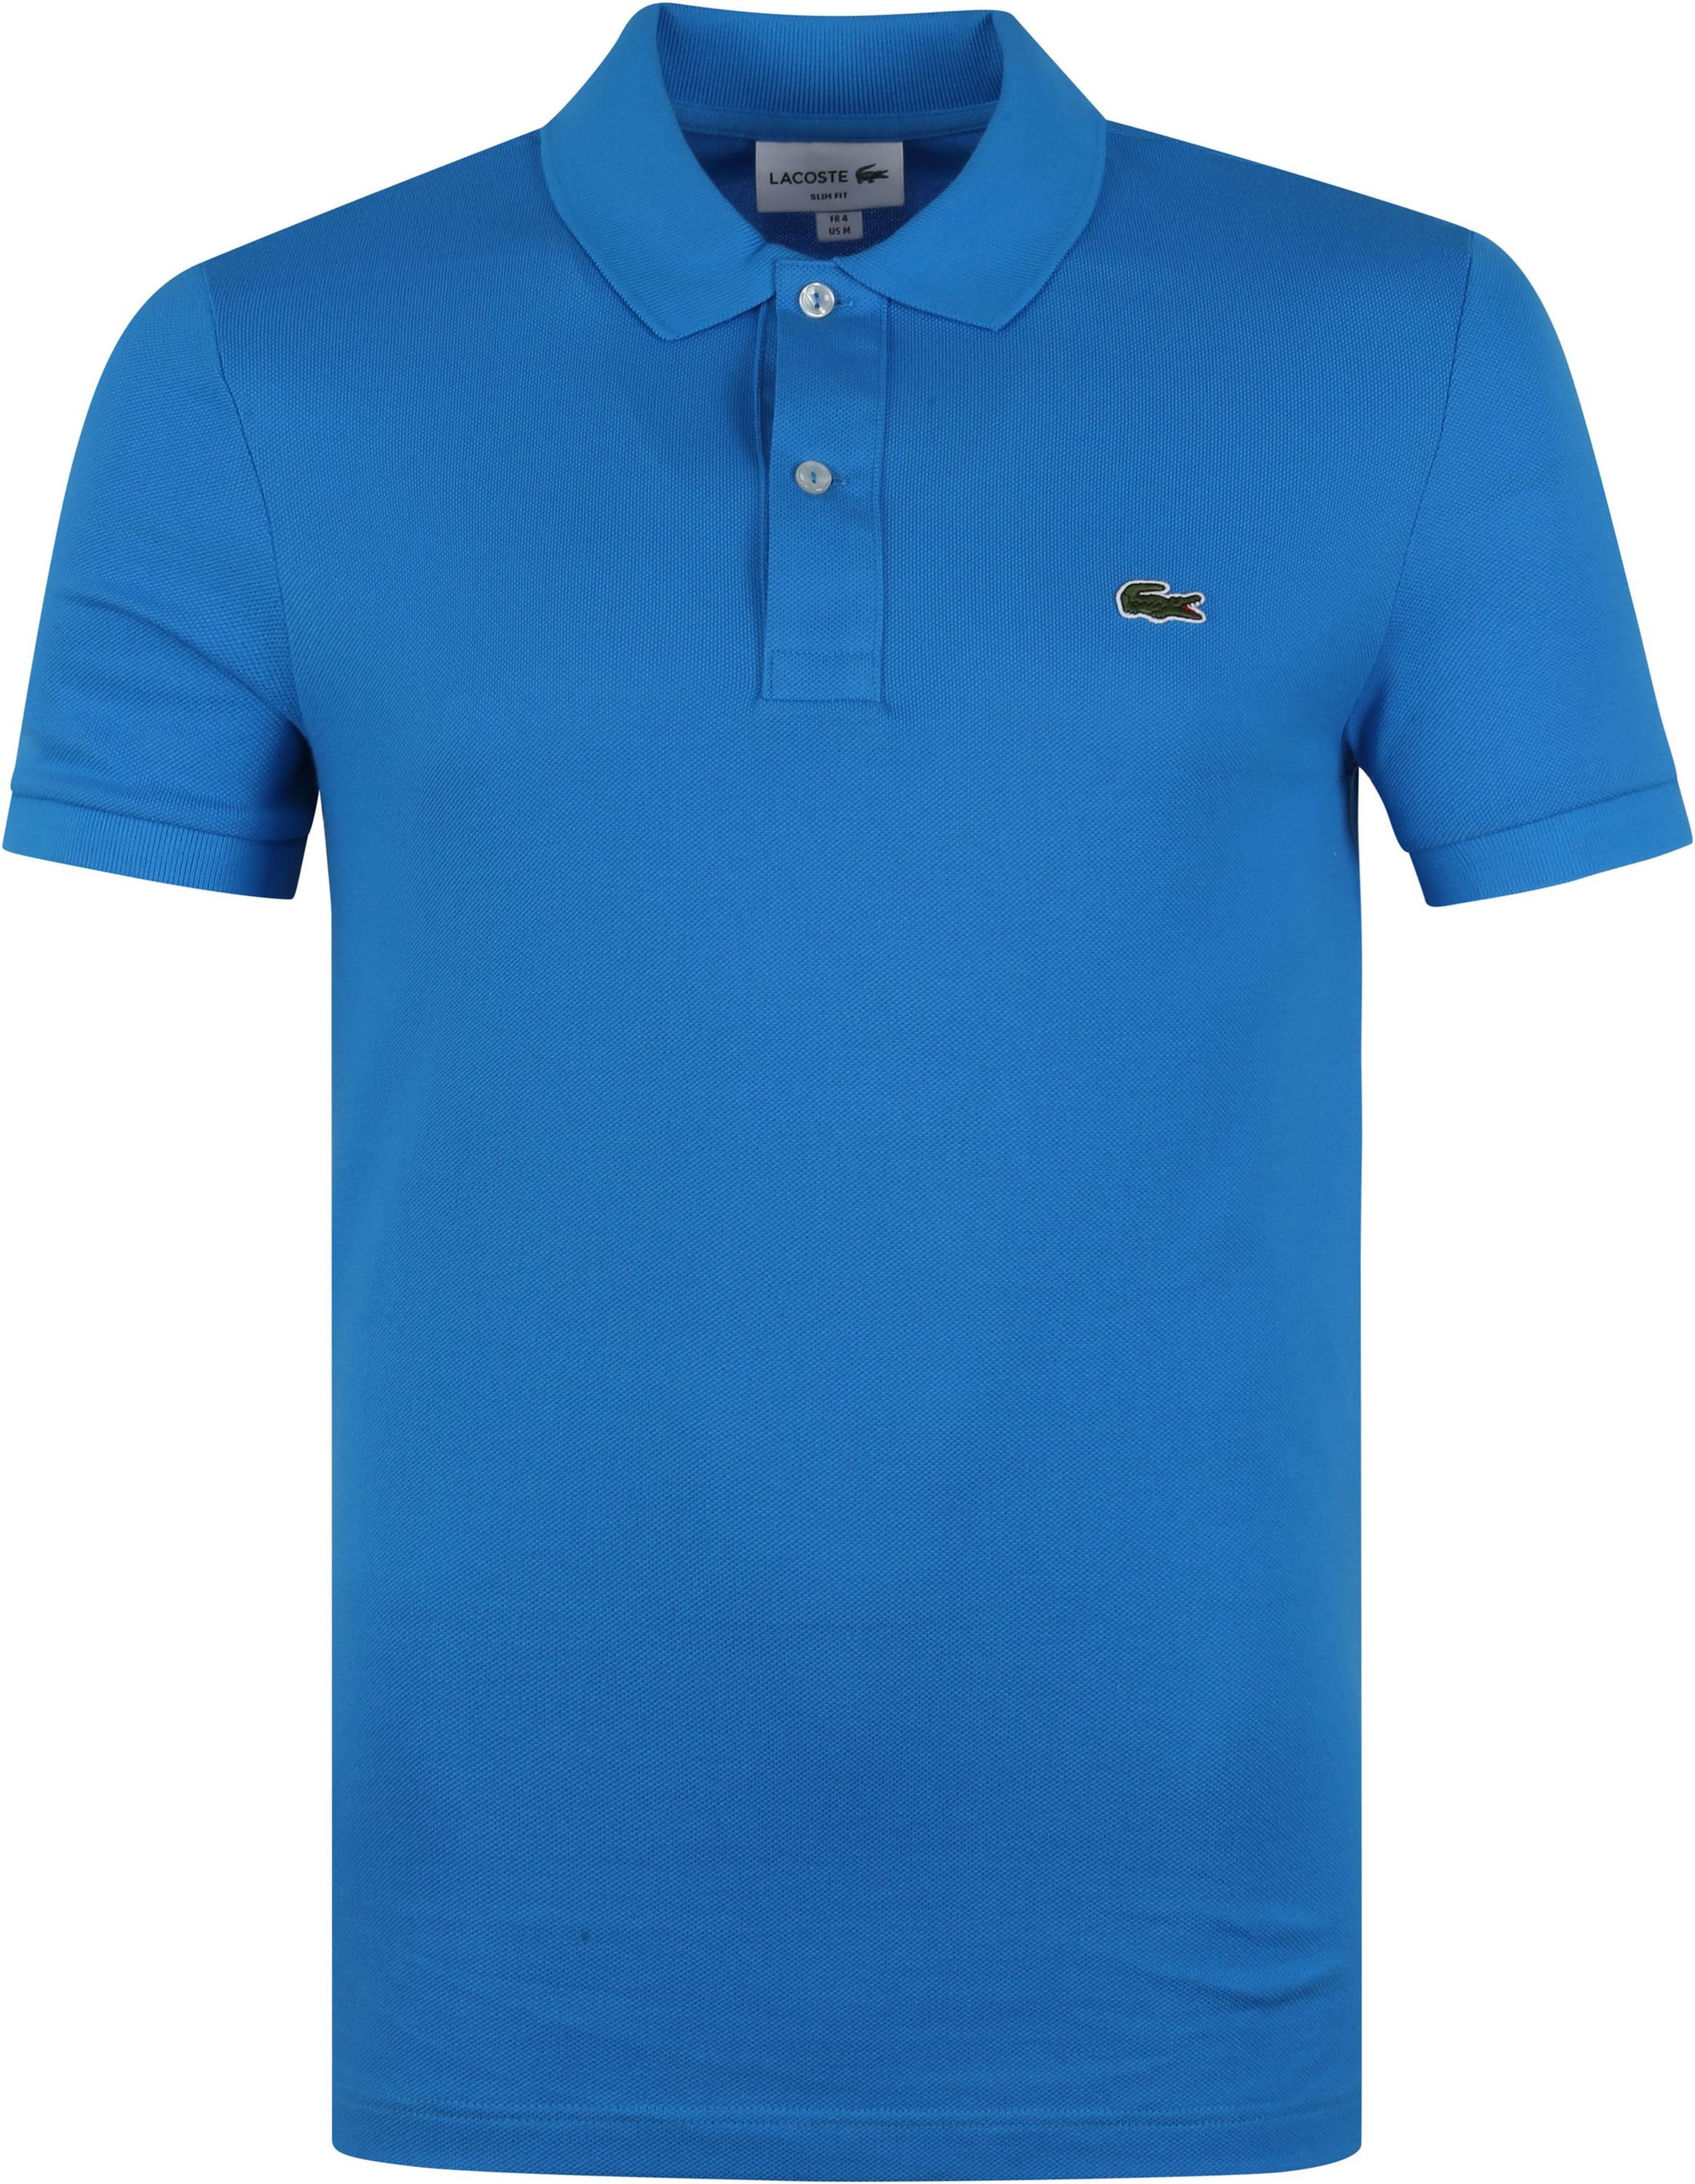 Lacoste Polo Shirt Pique Blue size L